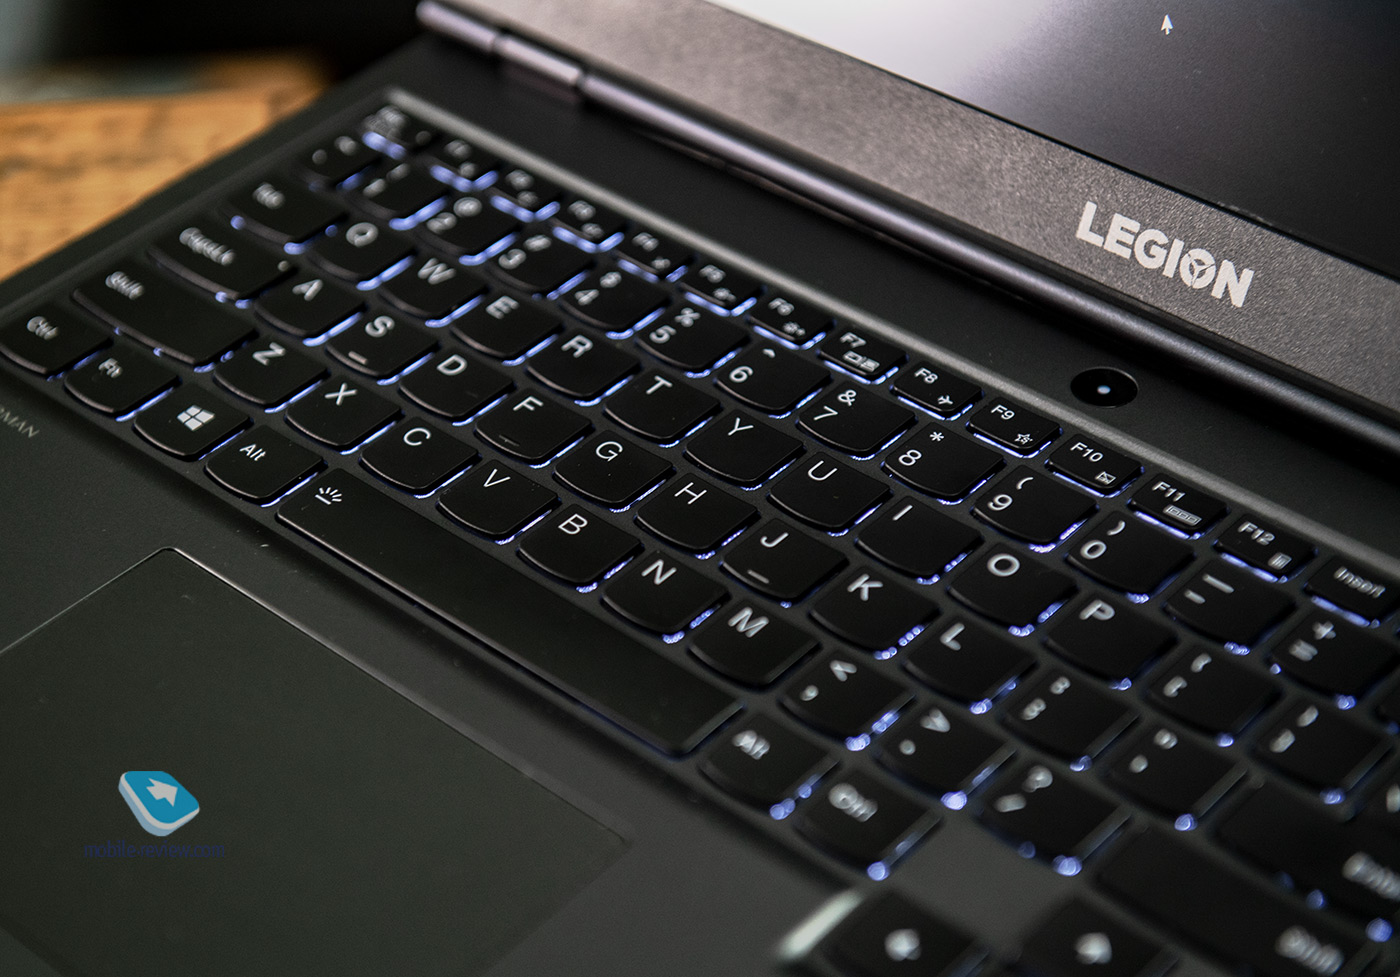 Купить Игровой Ноутбук Lenovo Legion 5